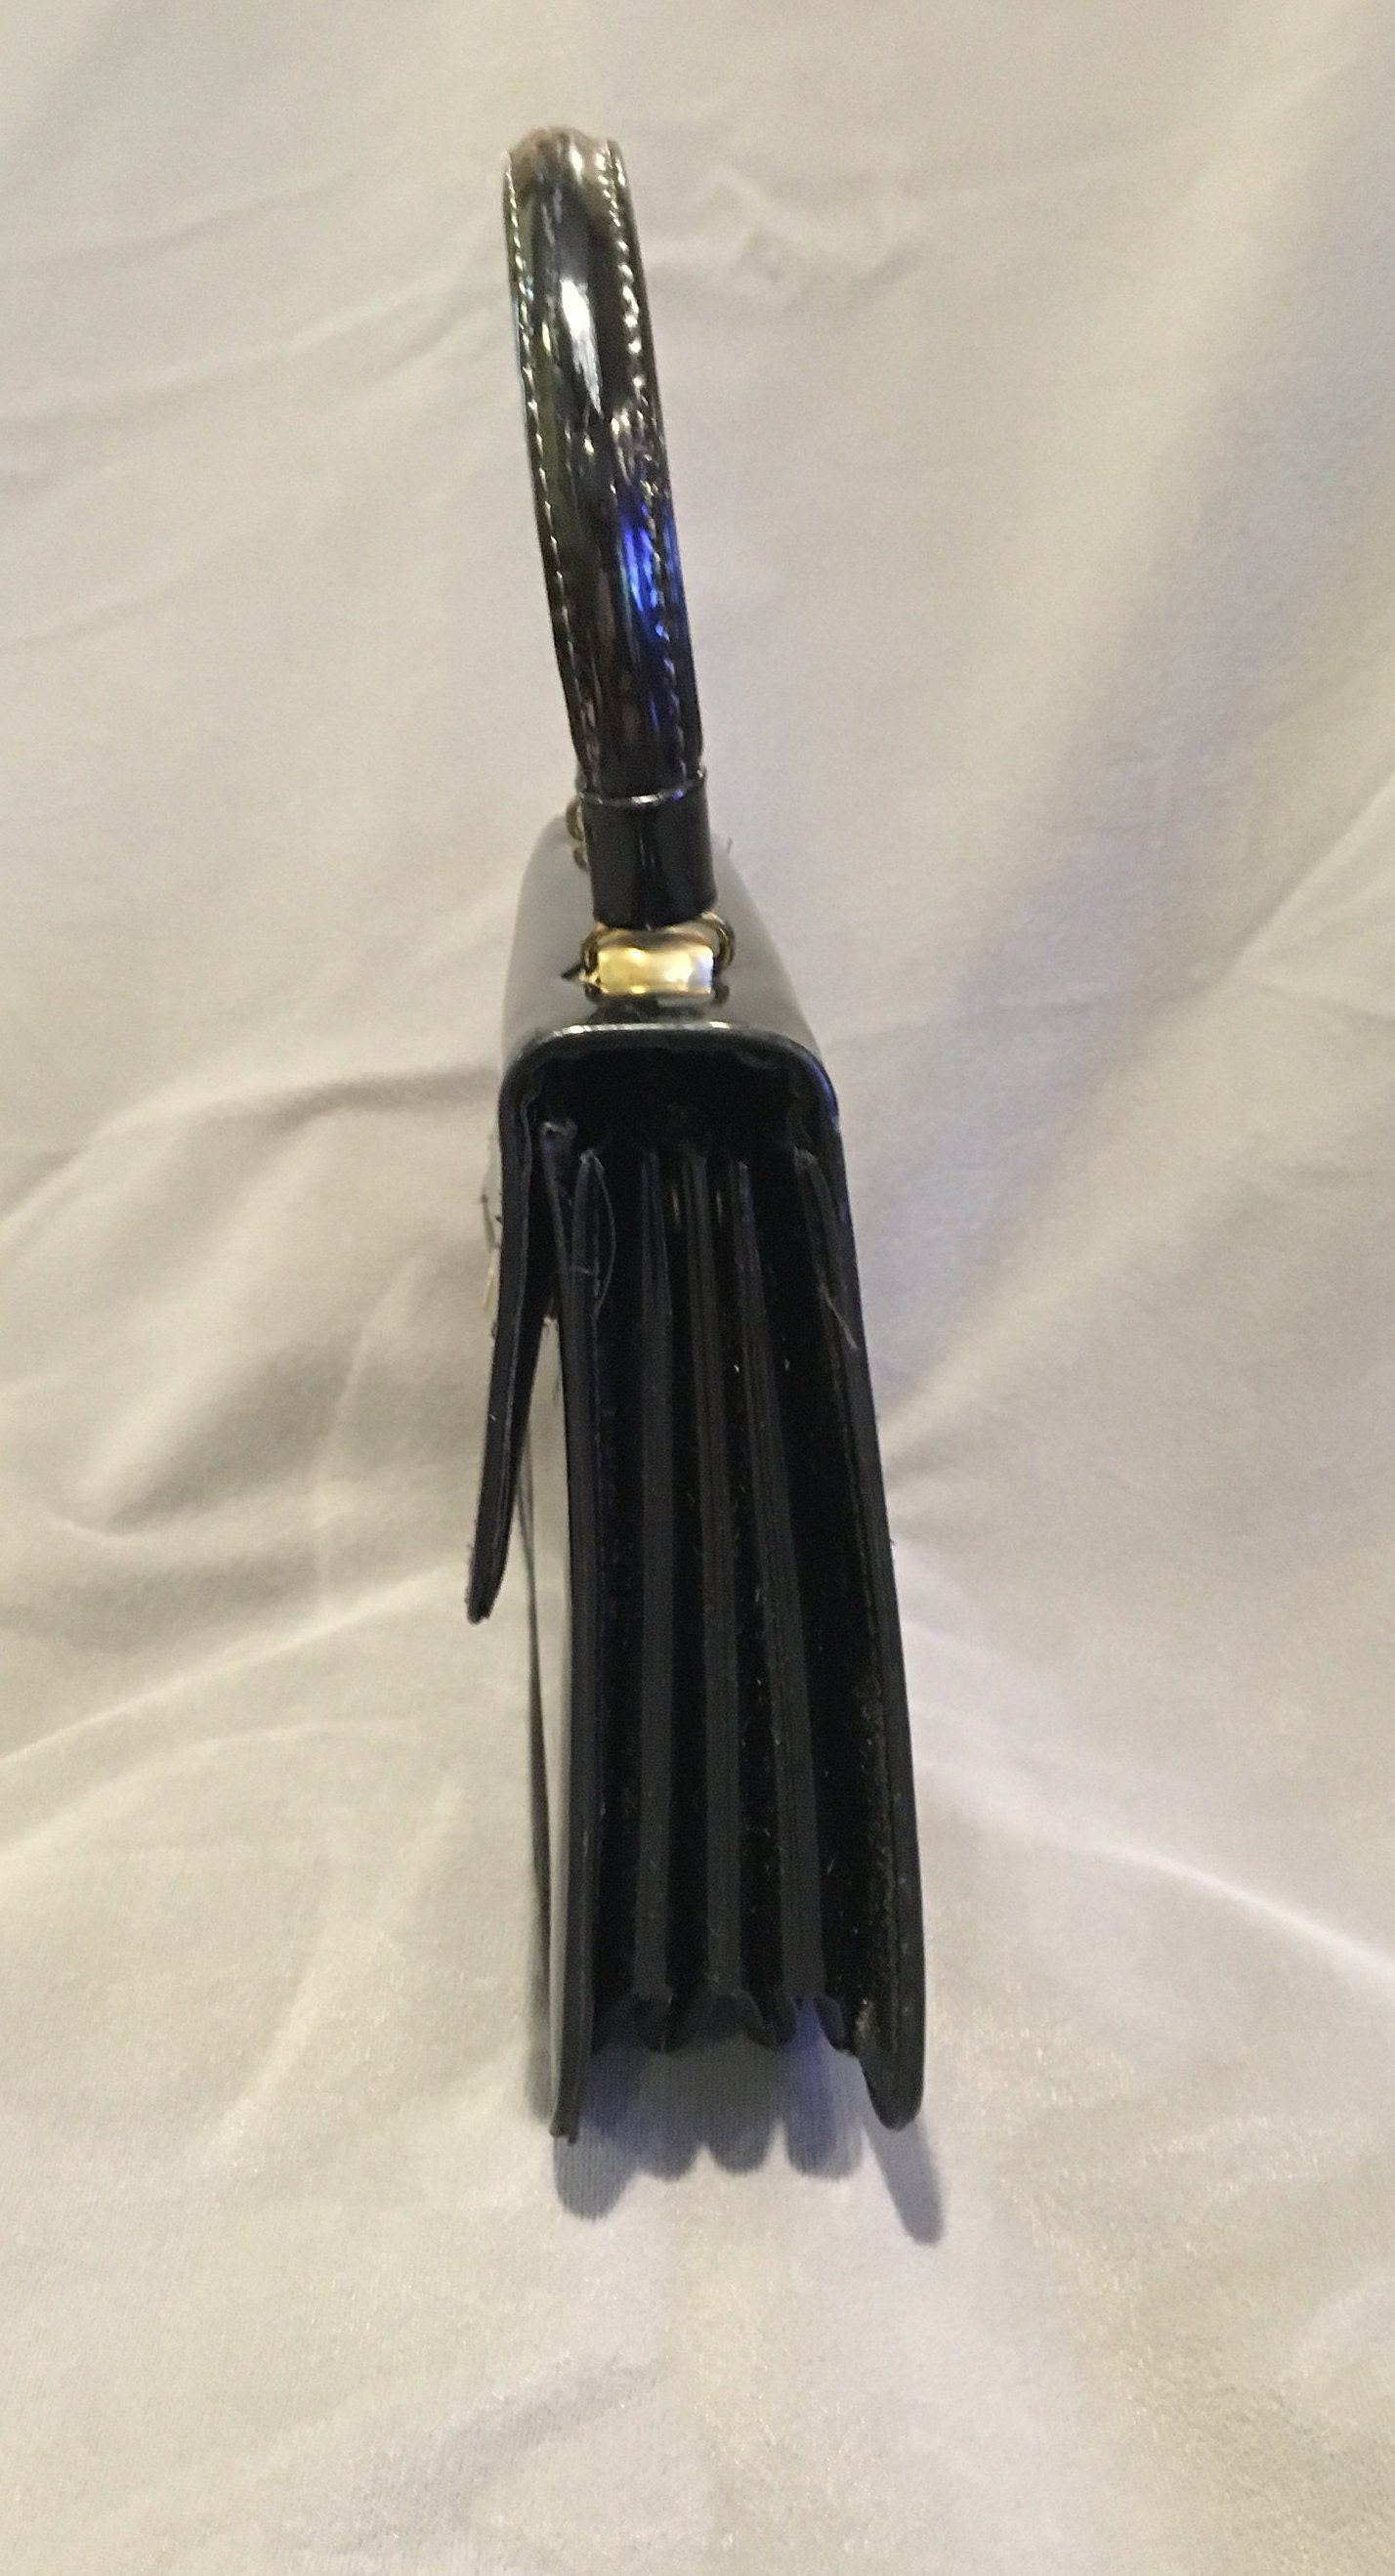 Vintage Black Patent Leather Kelly Handbag Mid Century Purse | Etsy